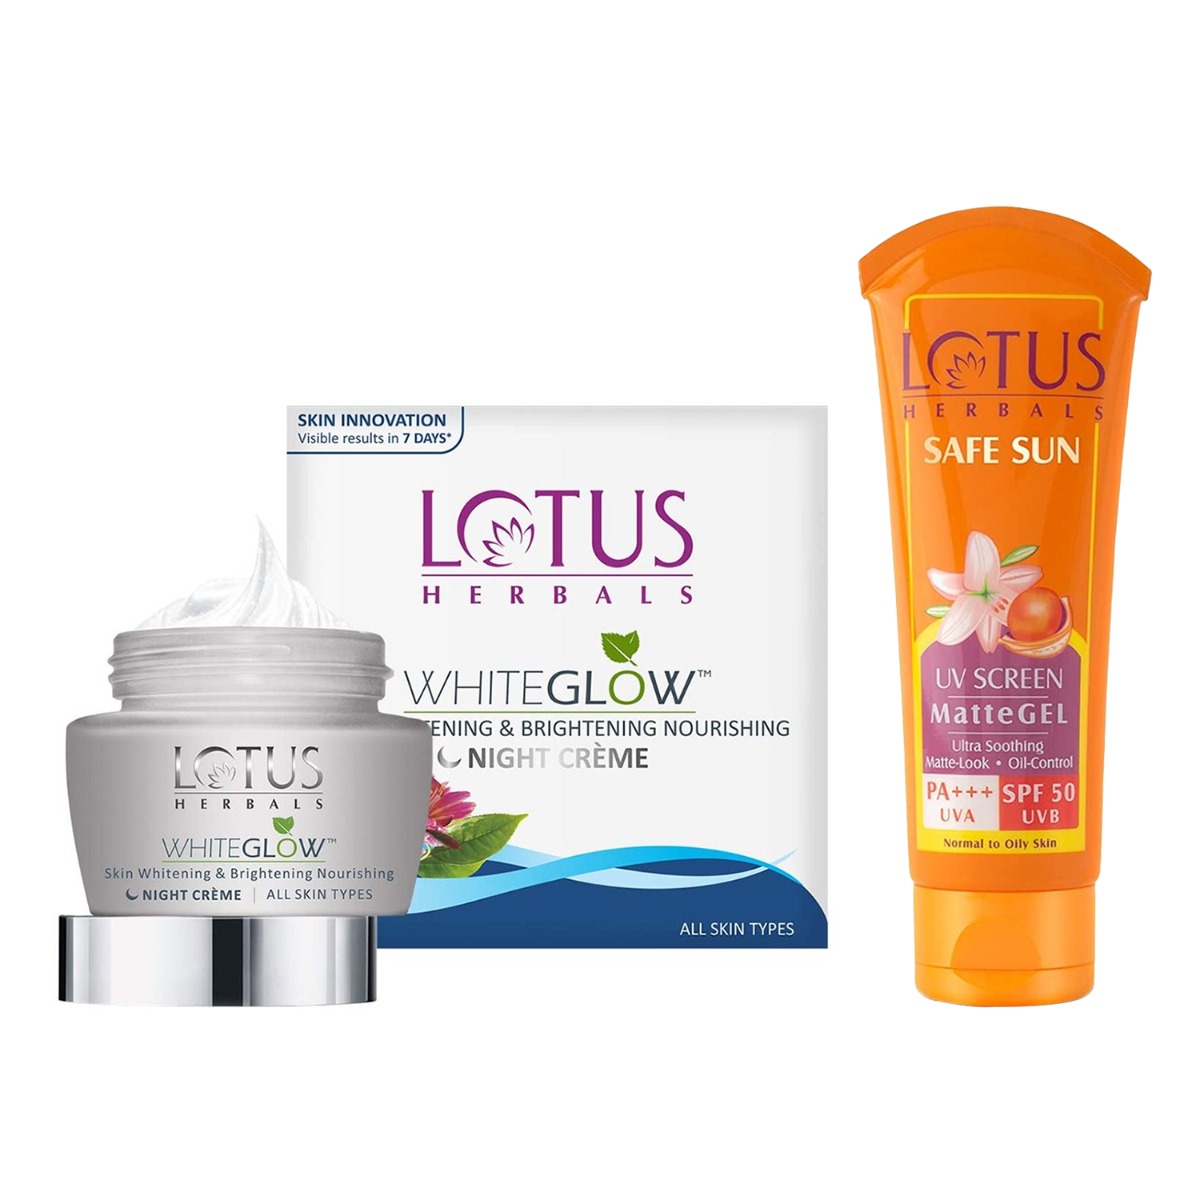 Lotus Herbals Safe Sun UV Screen Matte Gel Pa+++ SPF-50, 100gm & White Glow Skin Whitening and Brightening Nourishing Night Creme, 60gm